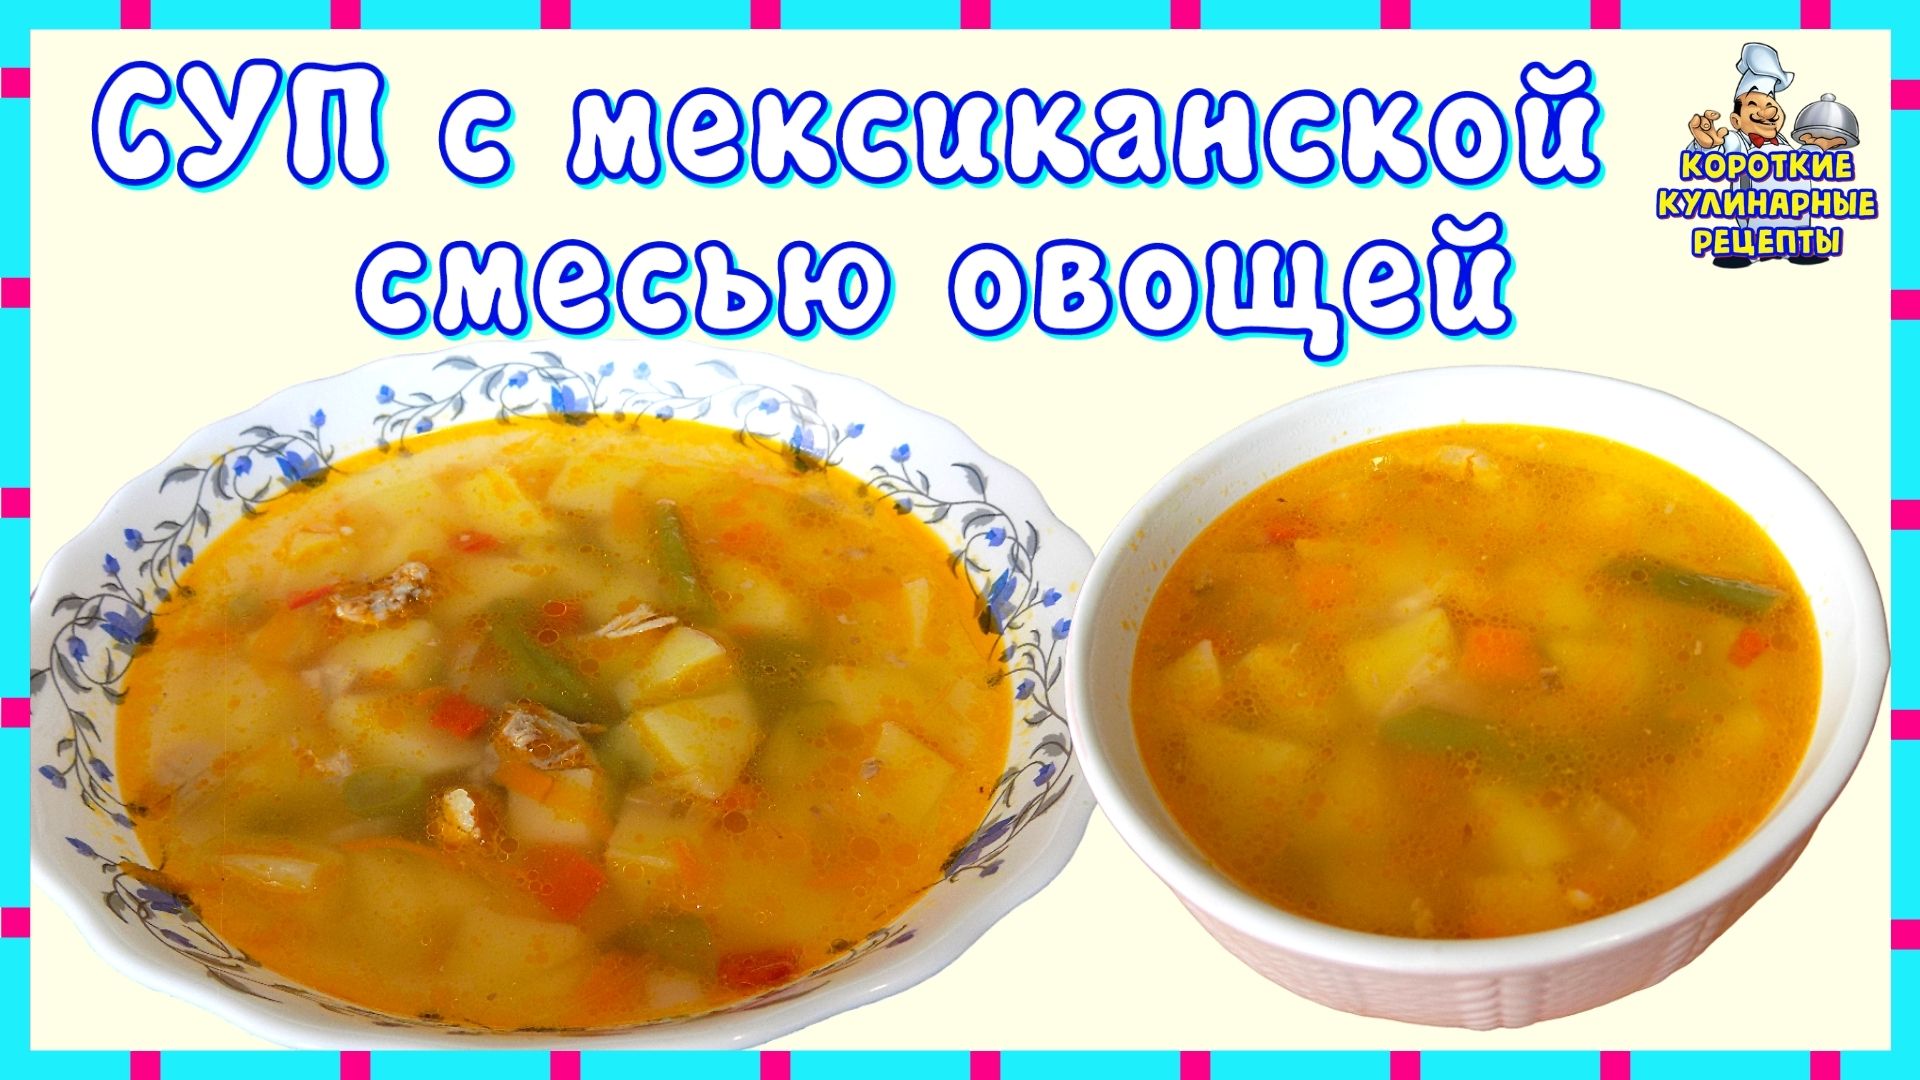 Рутуб рецепты. Суп из мексиканской овощной смеси. Овощные супы при панкреатите и холецистите рецепты. При приготовлении бульонов добавляют соль. Какой суп можно приготовить при геморрое.